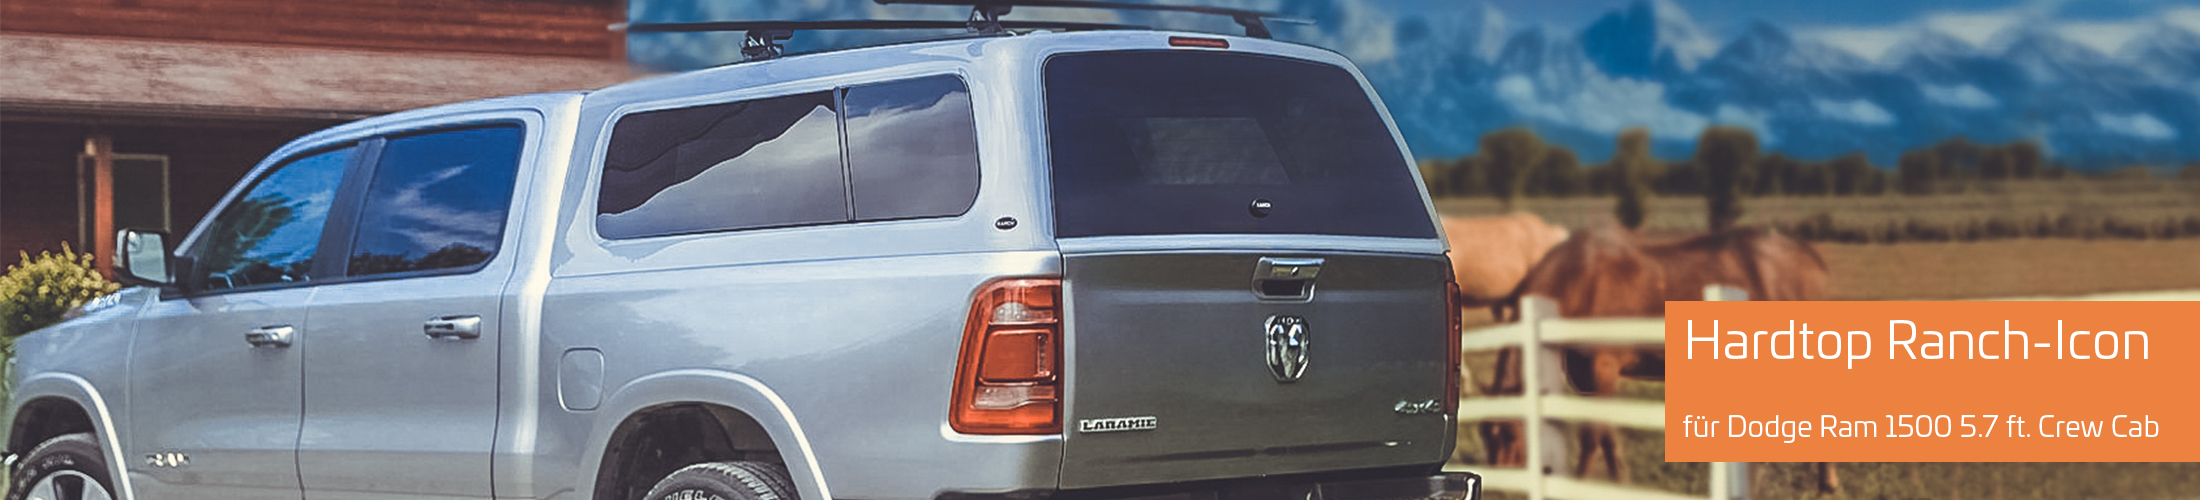 Bild zeigt Off Road Fahrzeug mit Hardtop der Marke Ranch Icon und Text "Hardtop Ranch-Icon für Dodge Ram 1500 5.7 ft. Crew Cab"